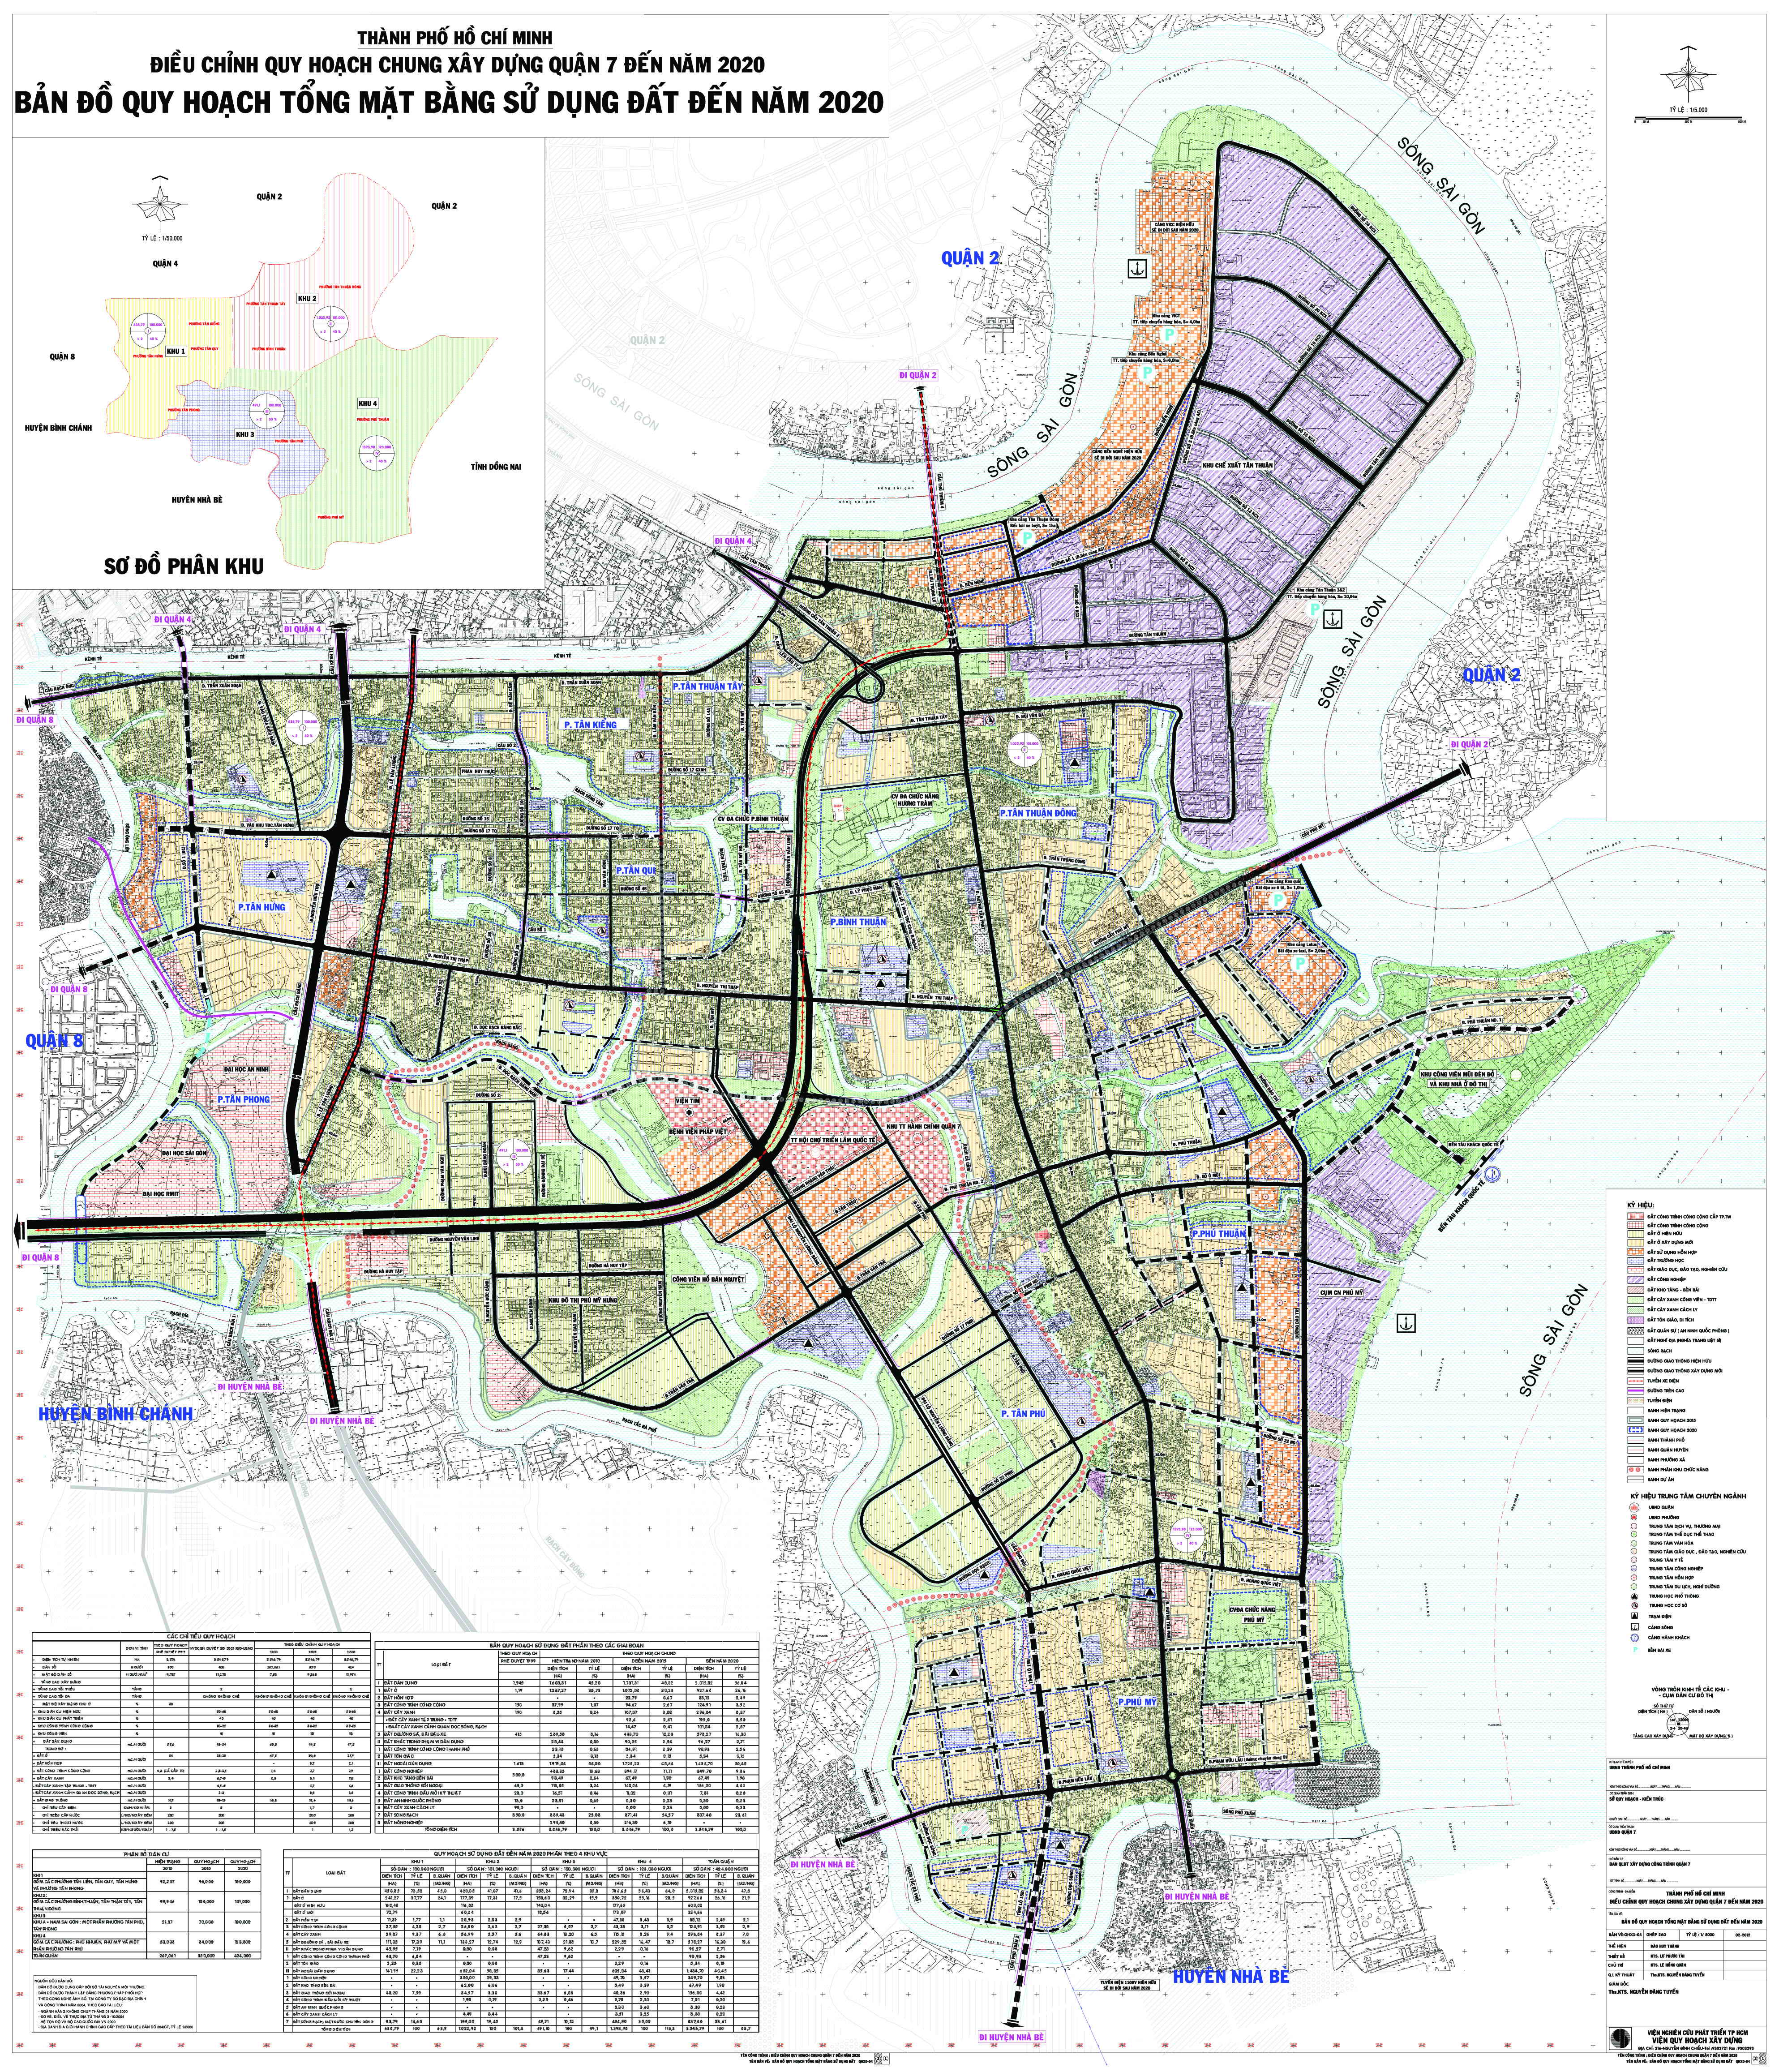 Khám phá bản đồ hành chính Quận 7 năm 2024 và cùng nhau đón chào một khu đô thị phát triển vượt bậc. Tận hưởng cuộc sống tiện ích tại nơi đây, với hệ thống giao thông hiện đại và tiện nghi đầy đủ, bạn chắc chắn sẽ không muốn rời đi.